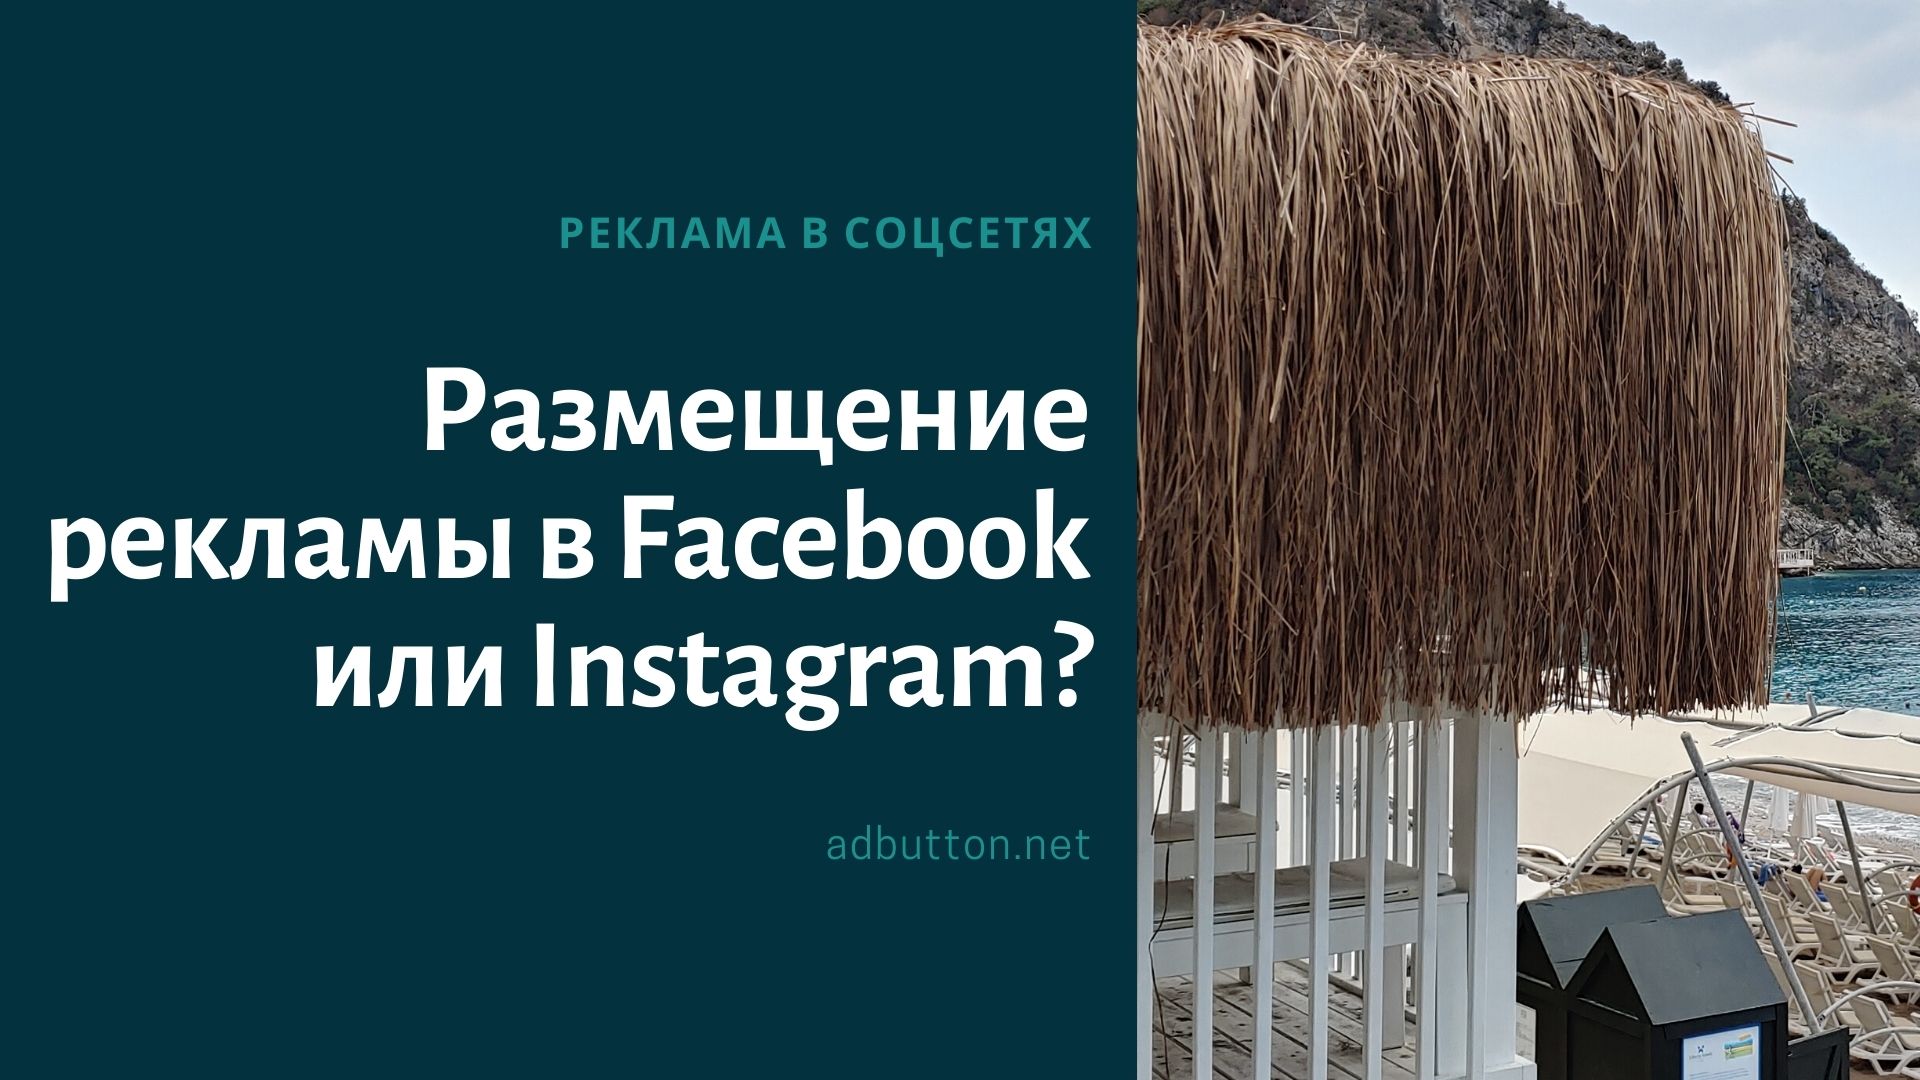 Где лучше разместить рекламное объявление в Facebook или Instagram?